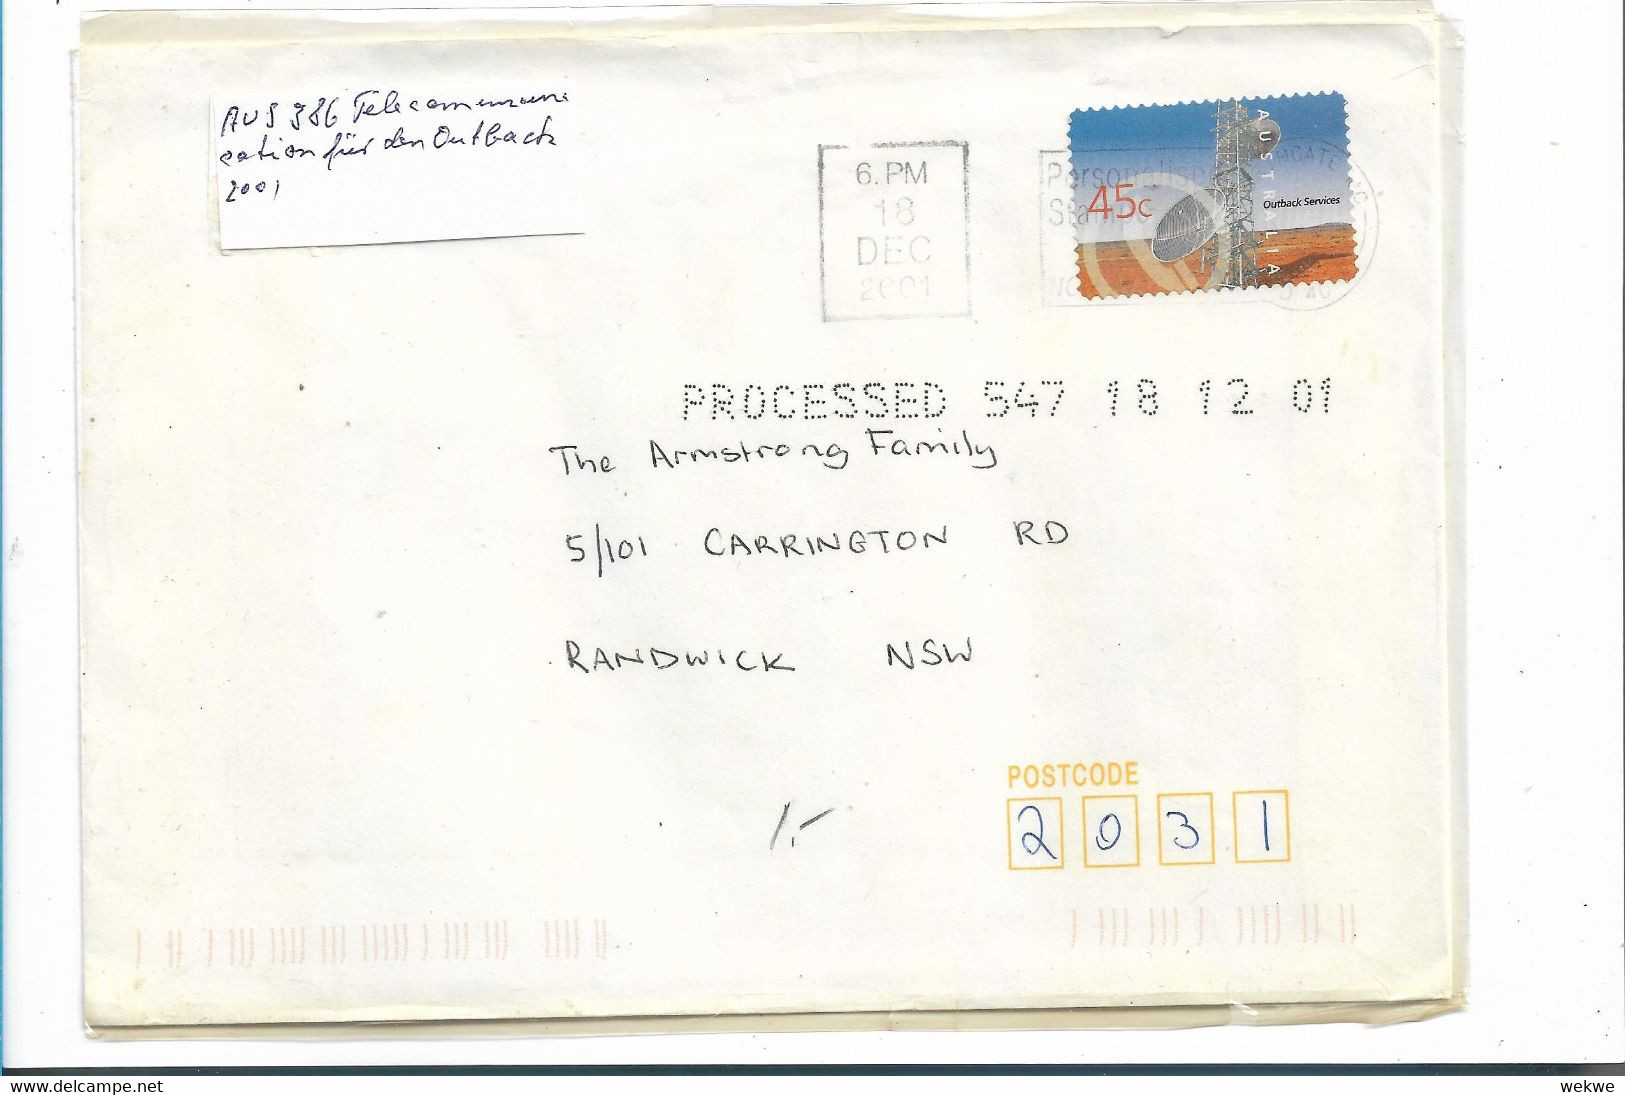 Aus386 / AUSTRALIEN - Telekommunikation Für Den Outback 2001 - Briefe U. Dokumente